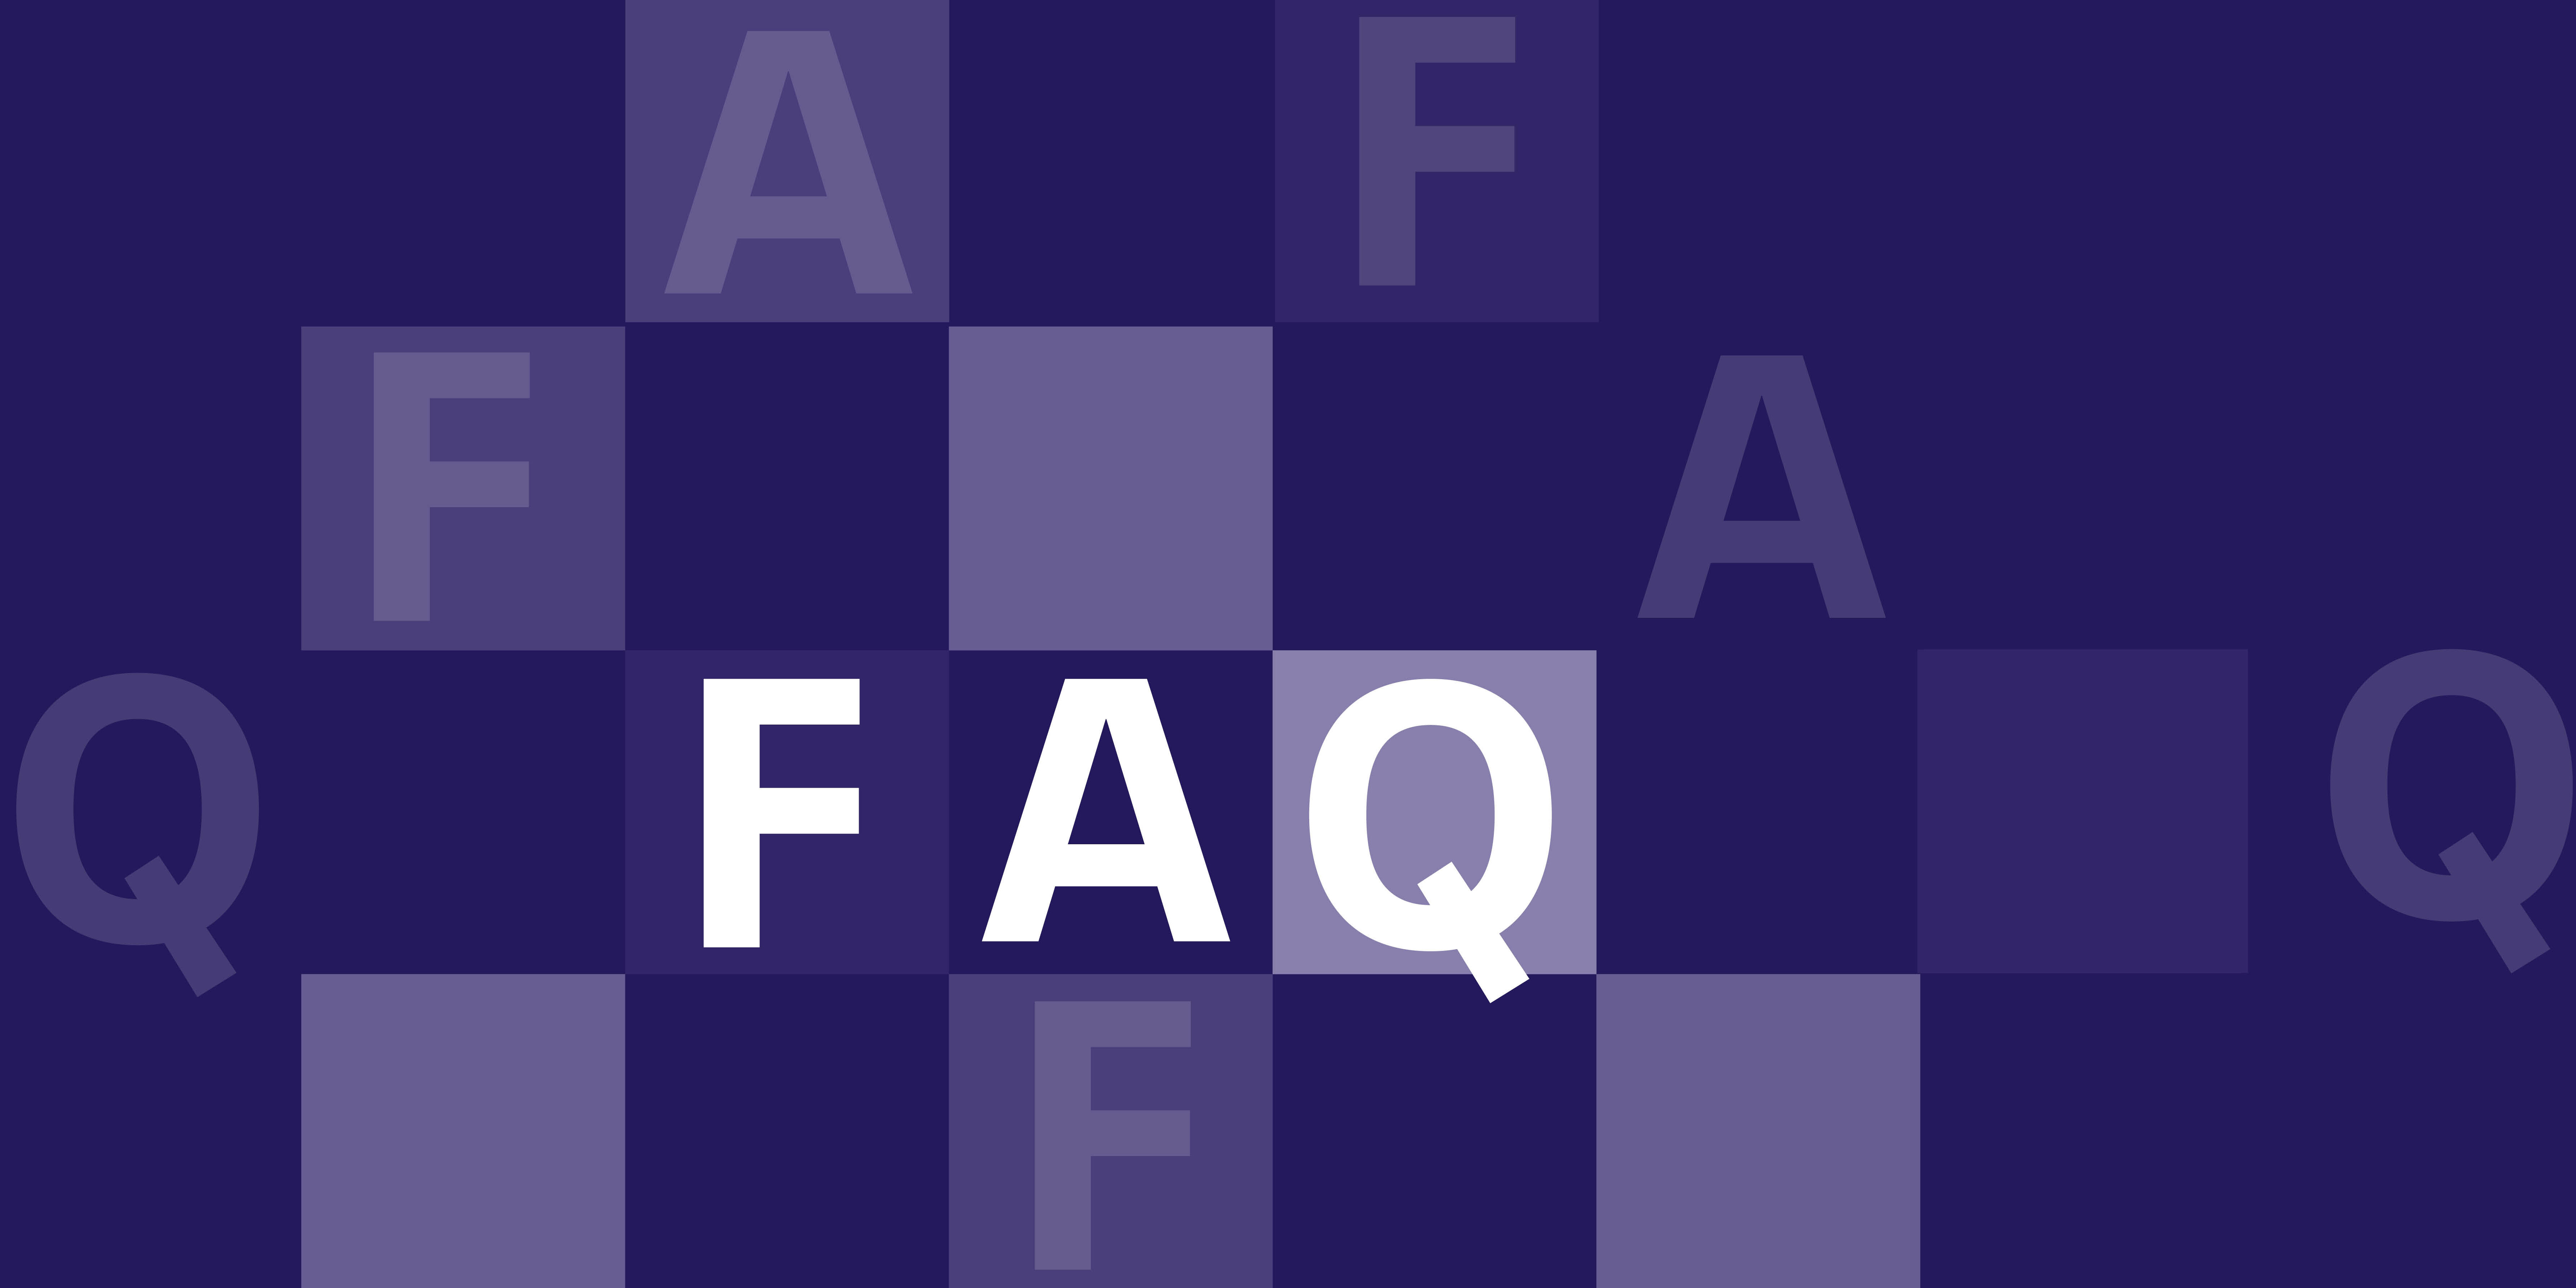 Die Buchstaben F A Q auf lila Hintergrund.